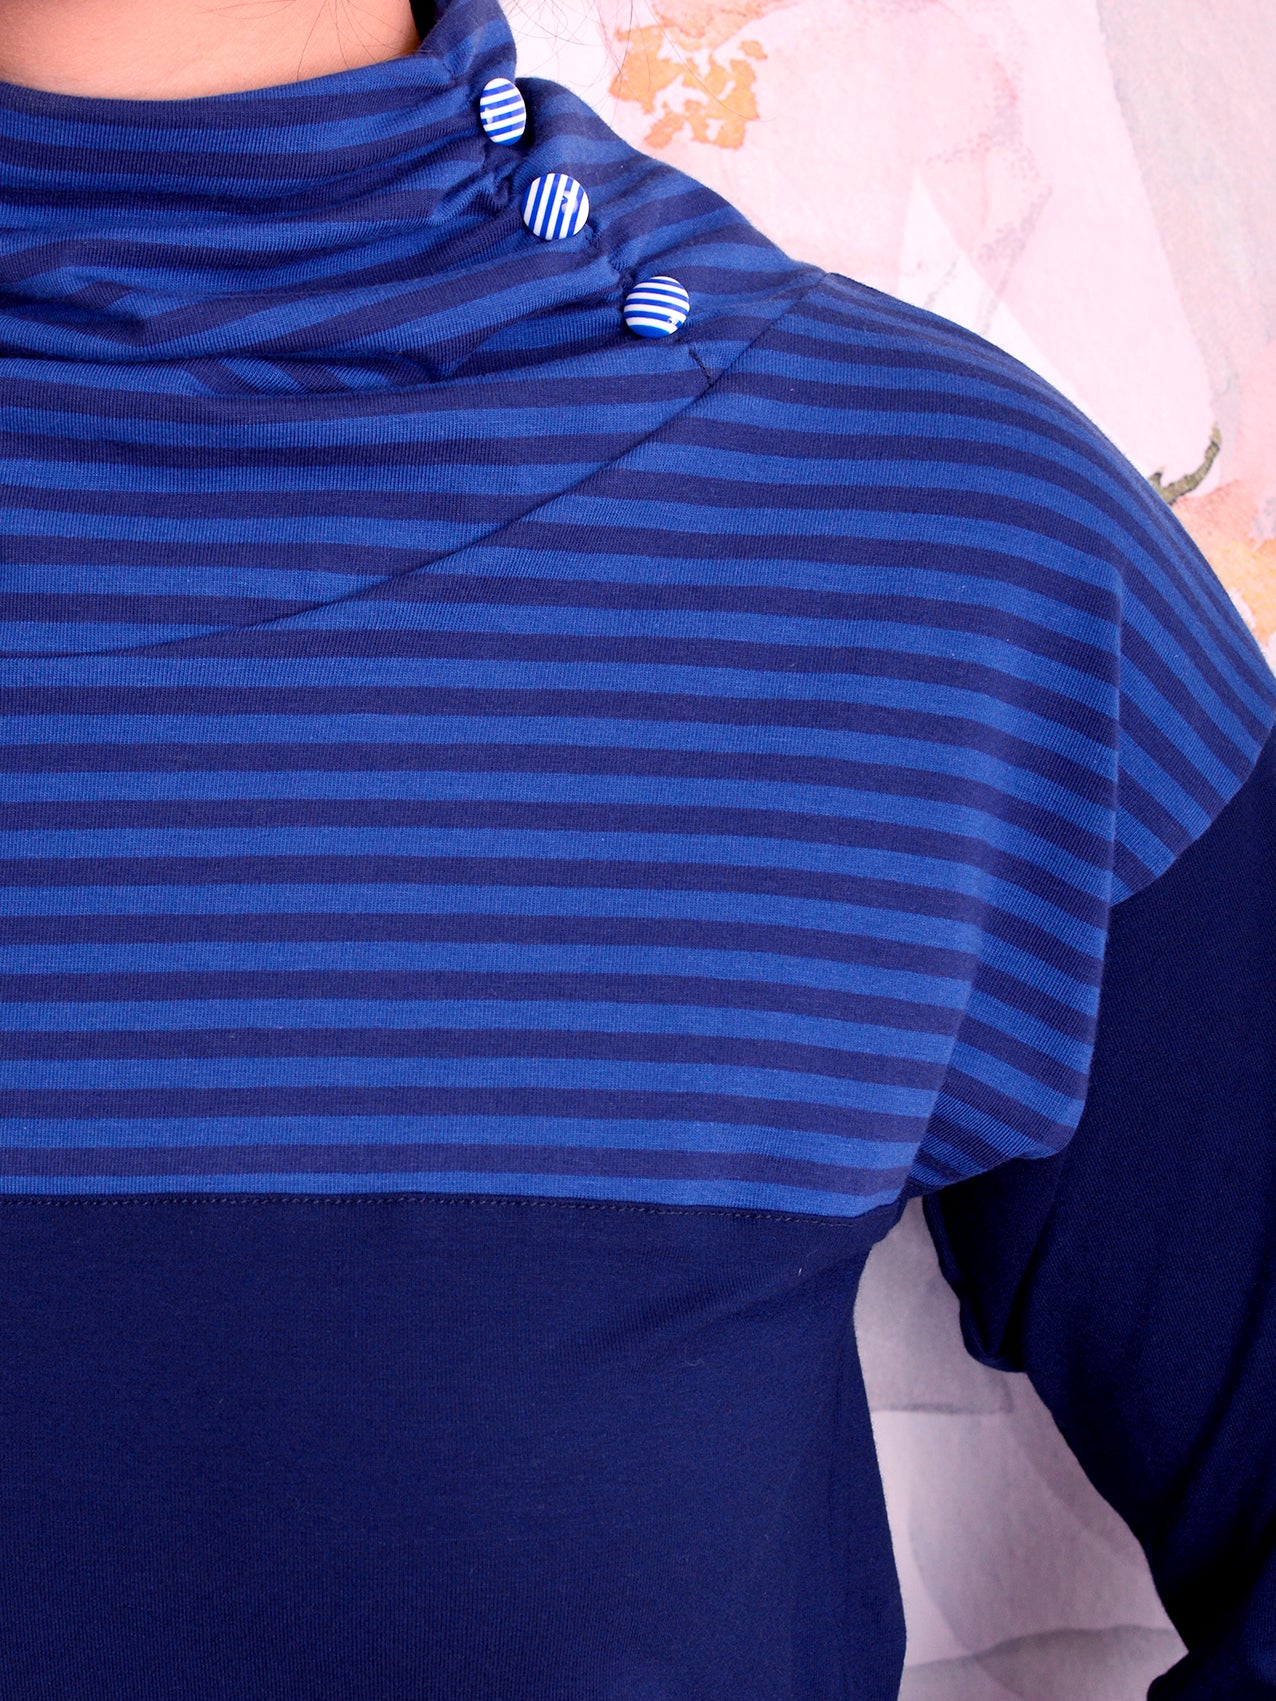 Jersey Shirt JUTTA blau Streifen Knöpfe von STADTKIND POTSDAM